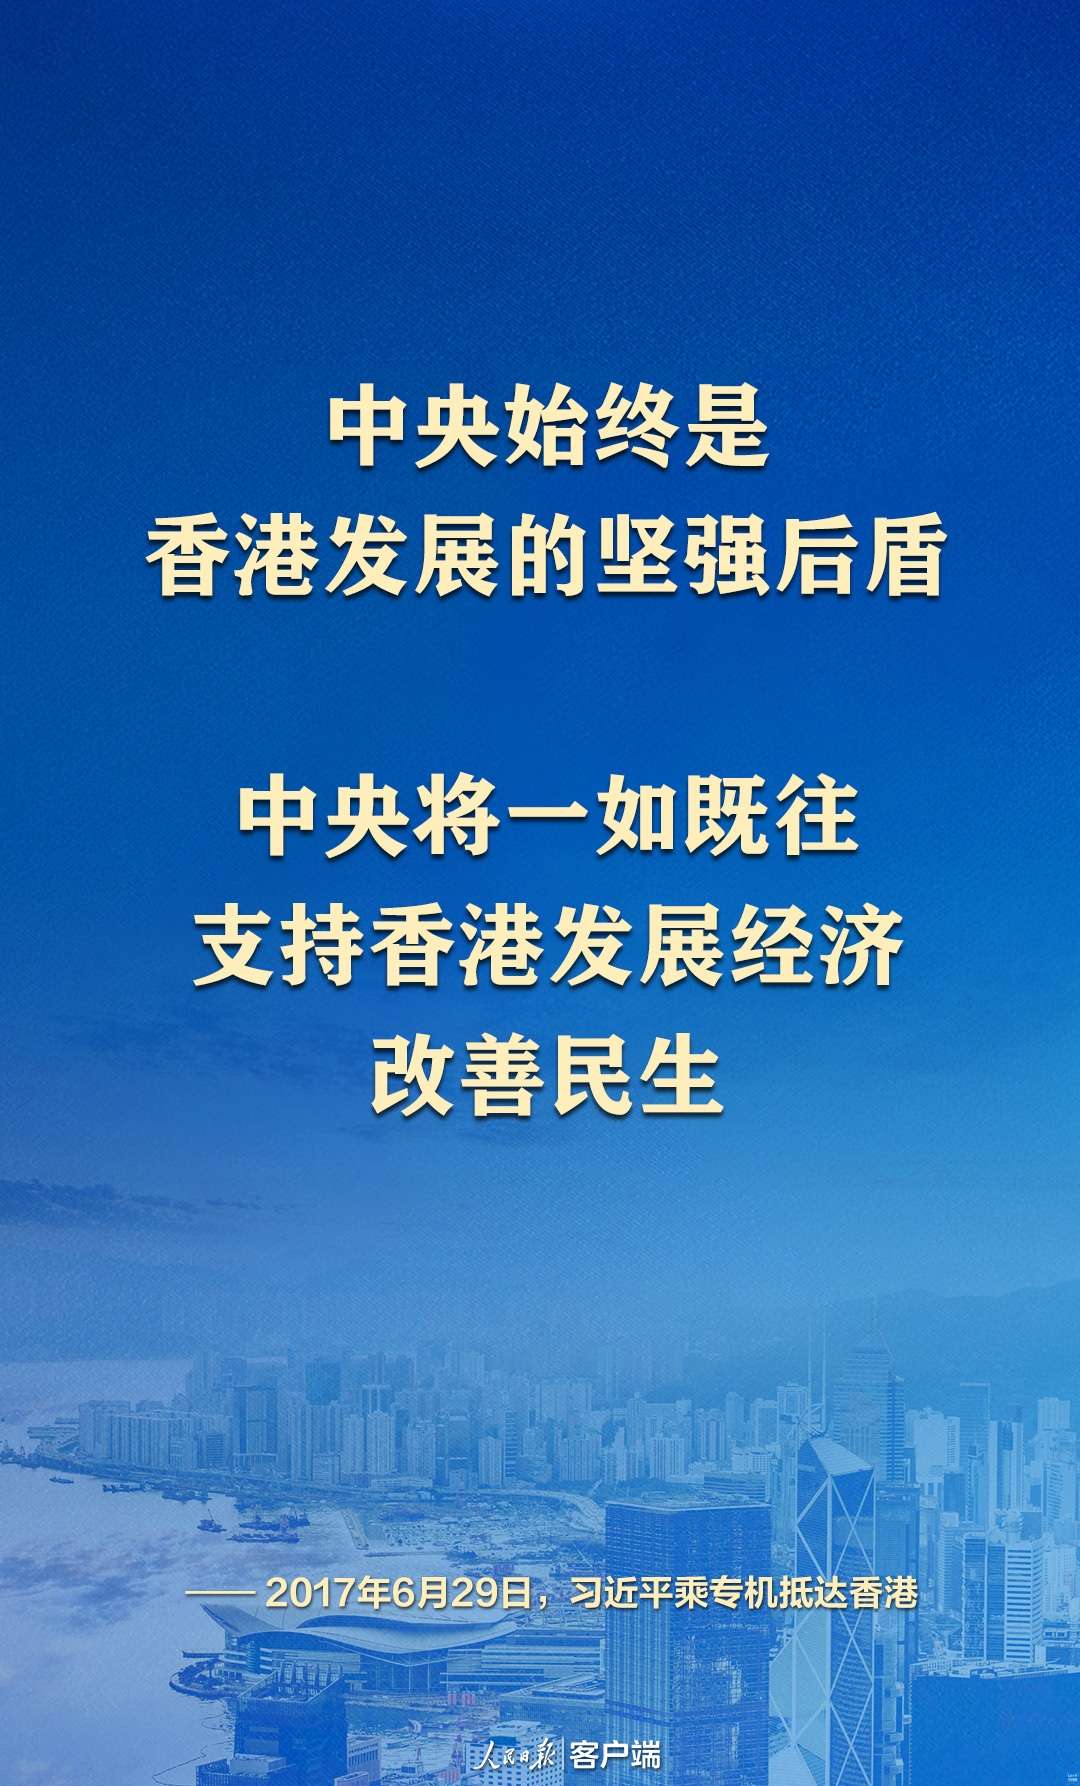 “中央将一如既往支持香港发展经济、改善民生”1.jpeg